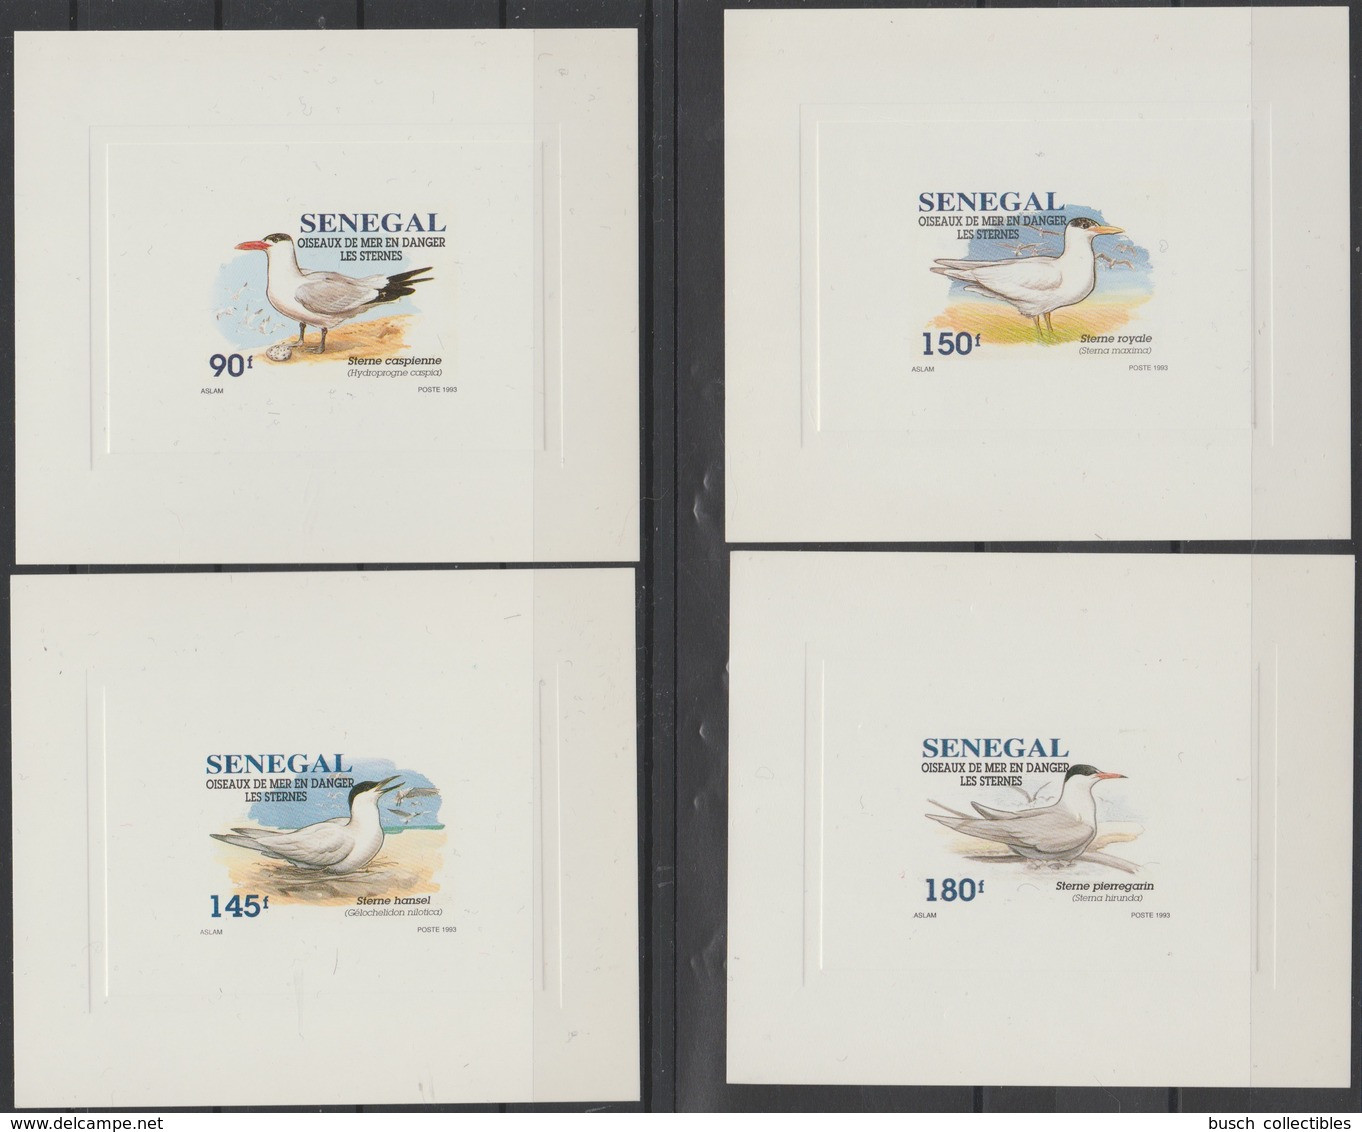 Sénégal 1993 / 1995 Mi. 1394 - 1397 Epreuve De Luxe Proof Oiseaux De Mer En Danger Sternes Mouettes Vögel Birds - Seagulls